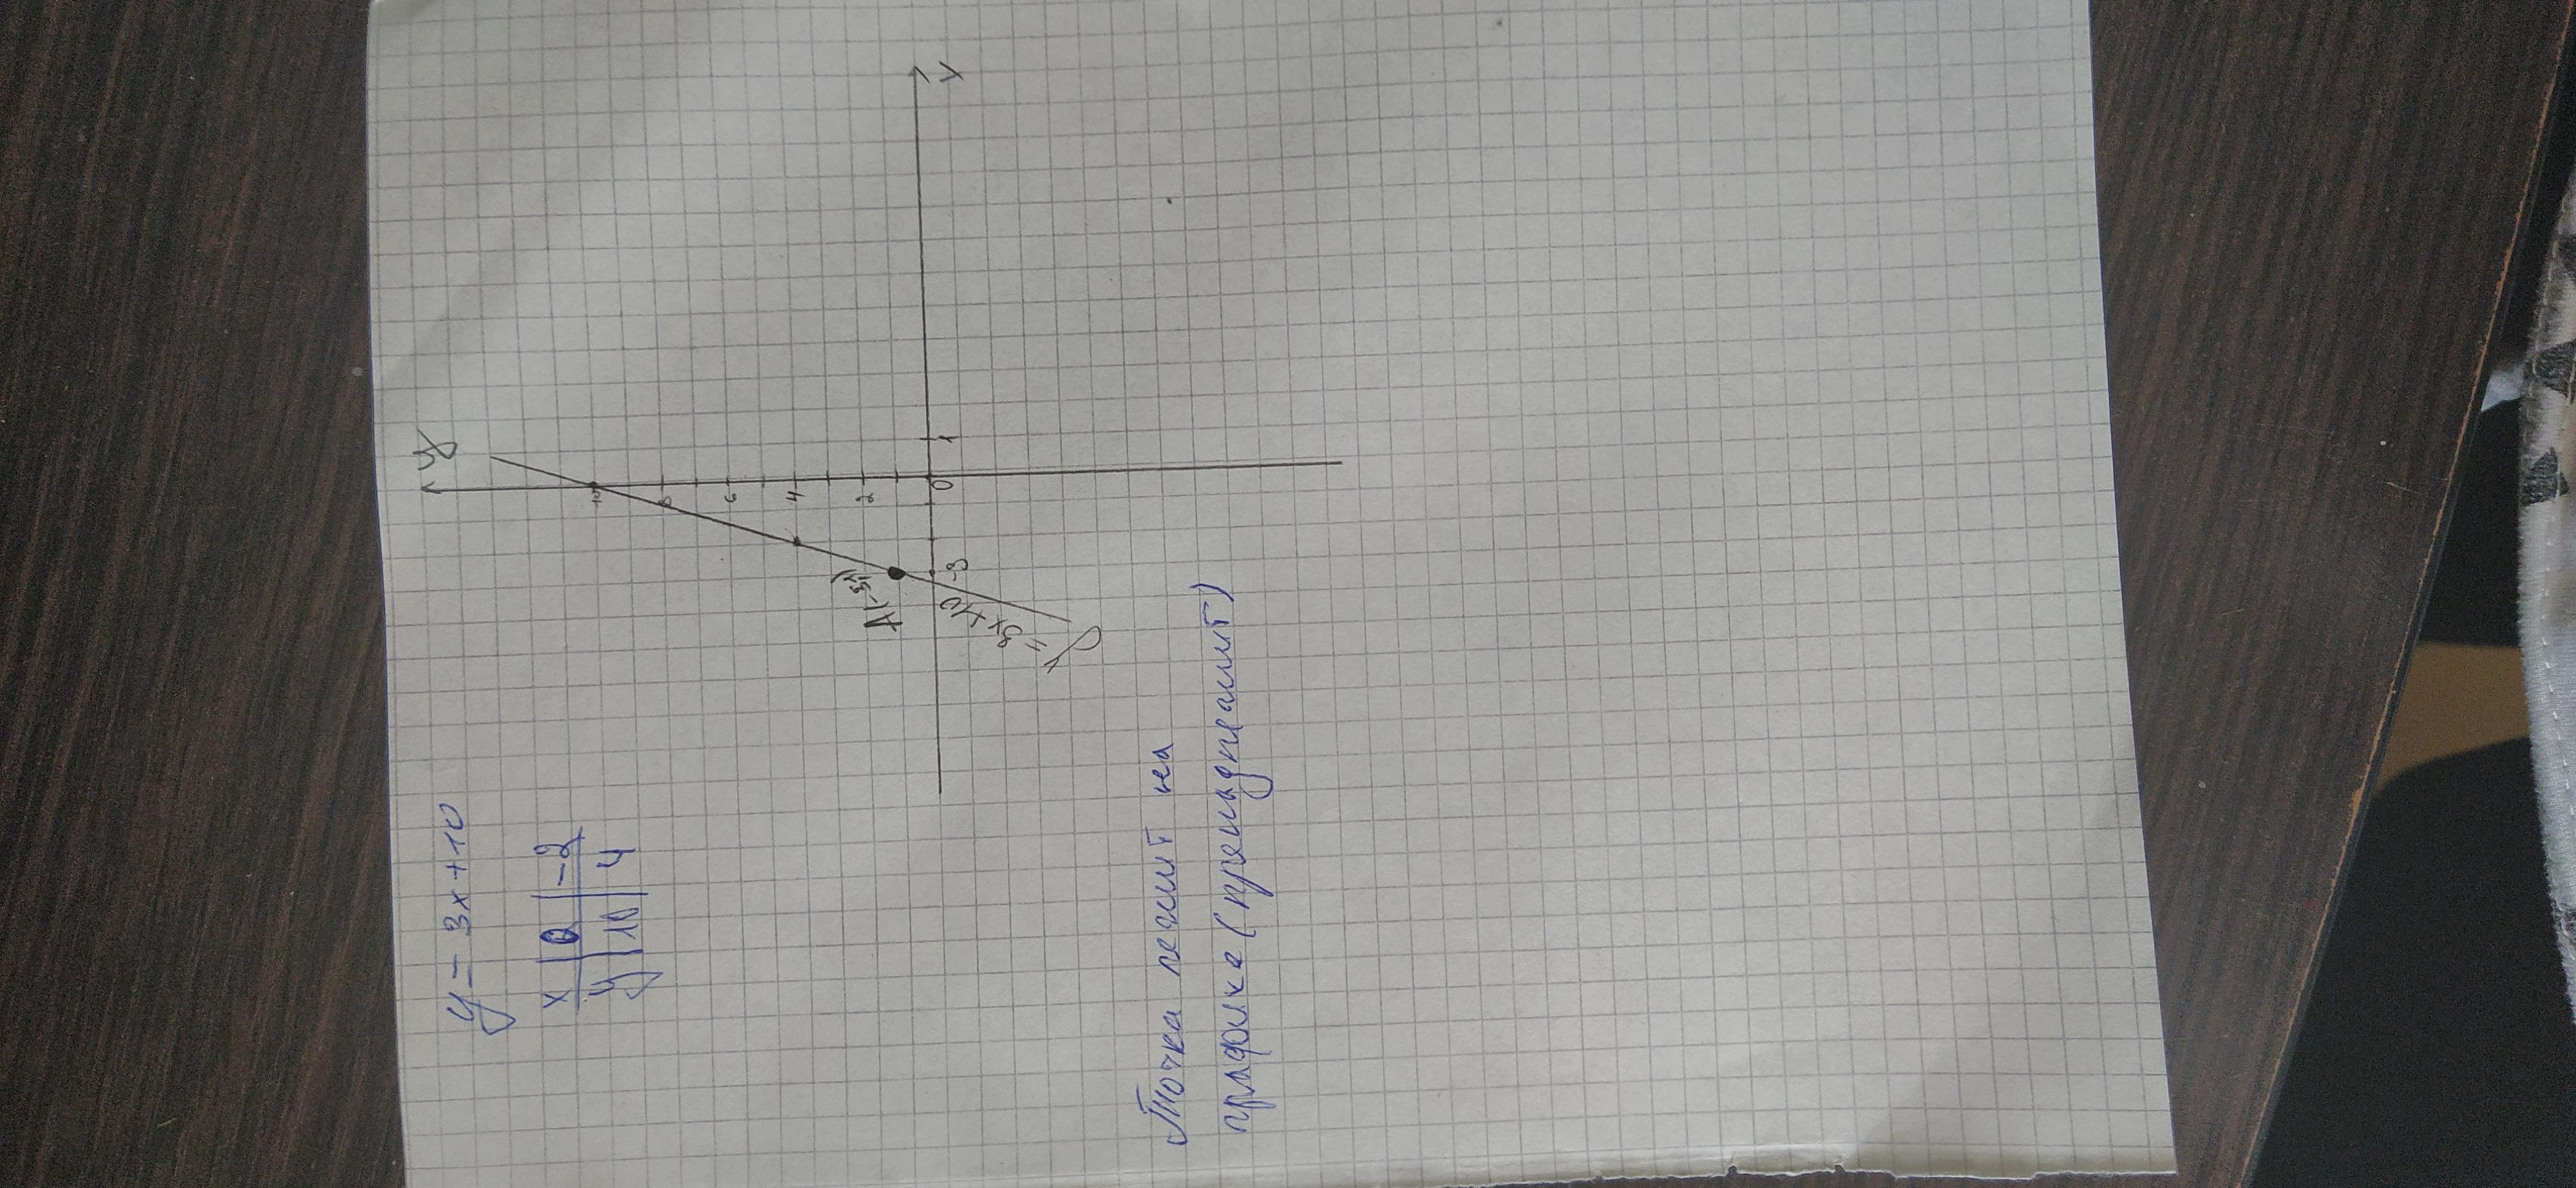 Функция задана y 3x 7. Функция задана формулой y=3x+10 где лежит точка а(-3;1). Функция задана формулой y=3х-22 где лежит точка а 7 0. Выше ниже или принадлежит графику точка -3 1. Пример черчения графиков собирающей линзы.